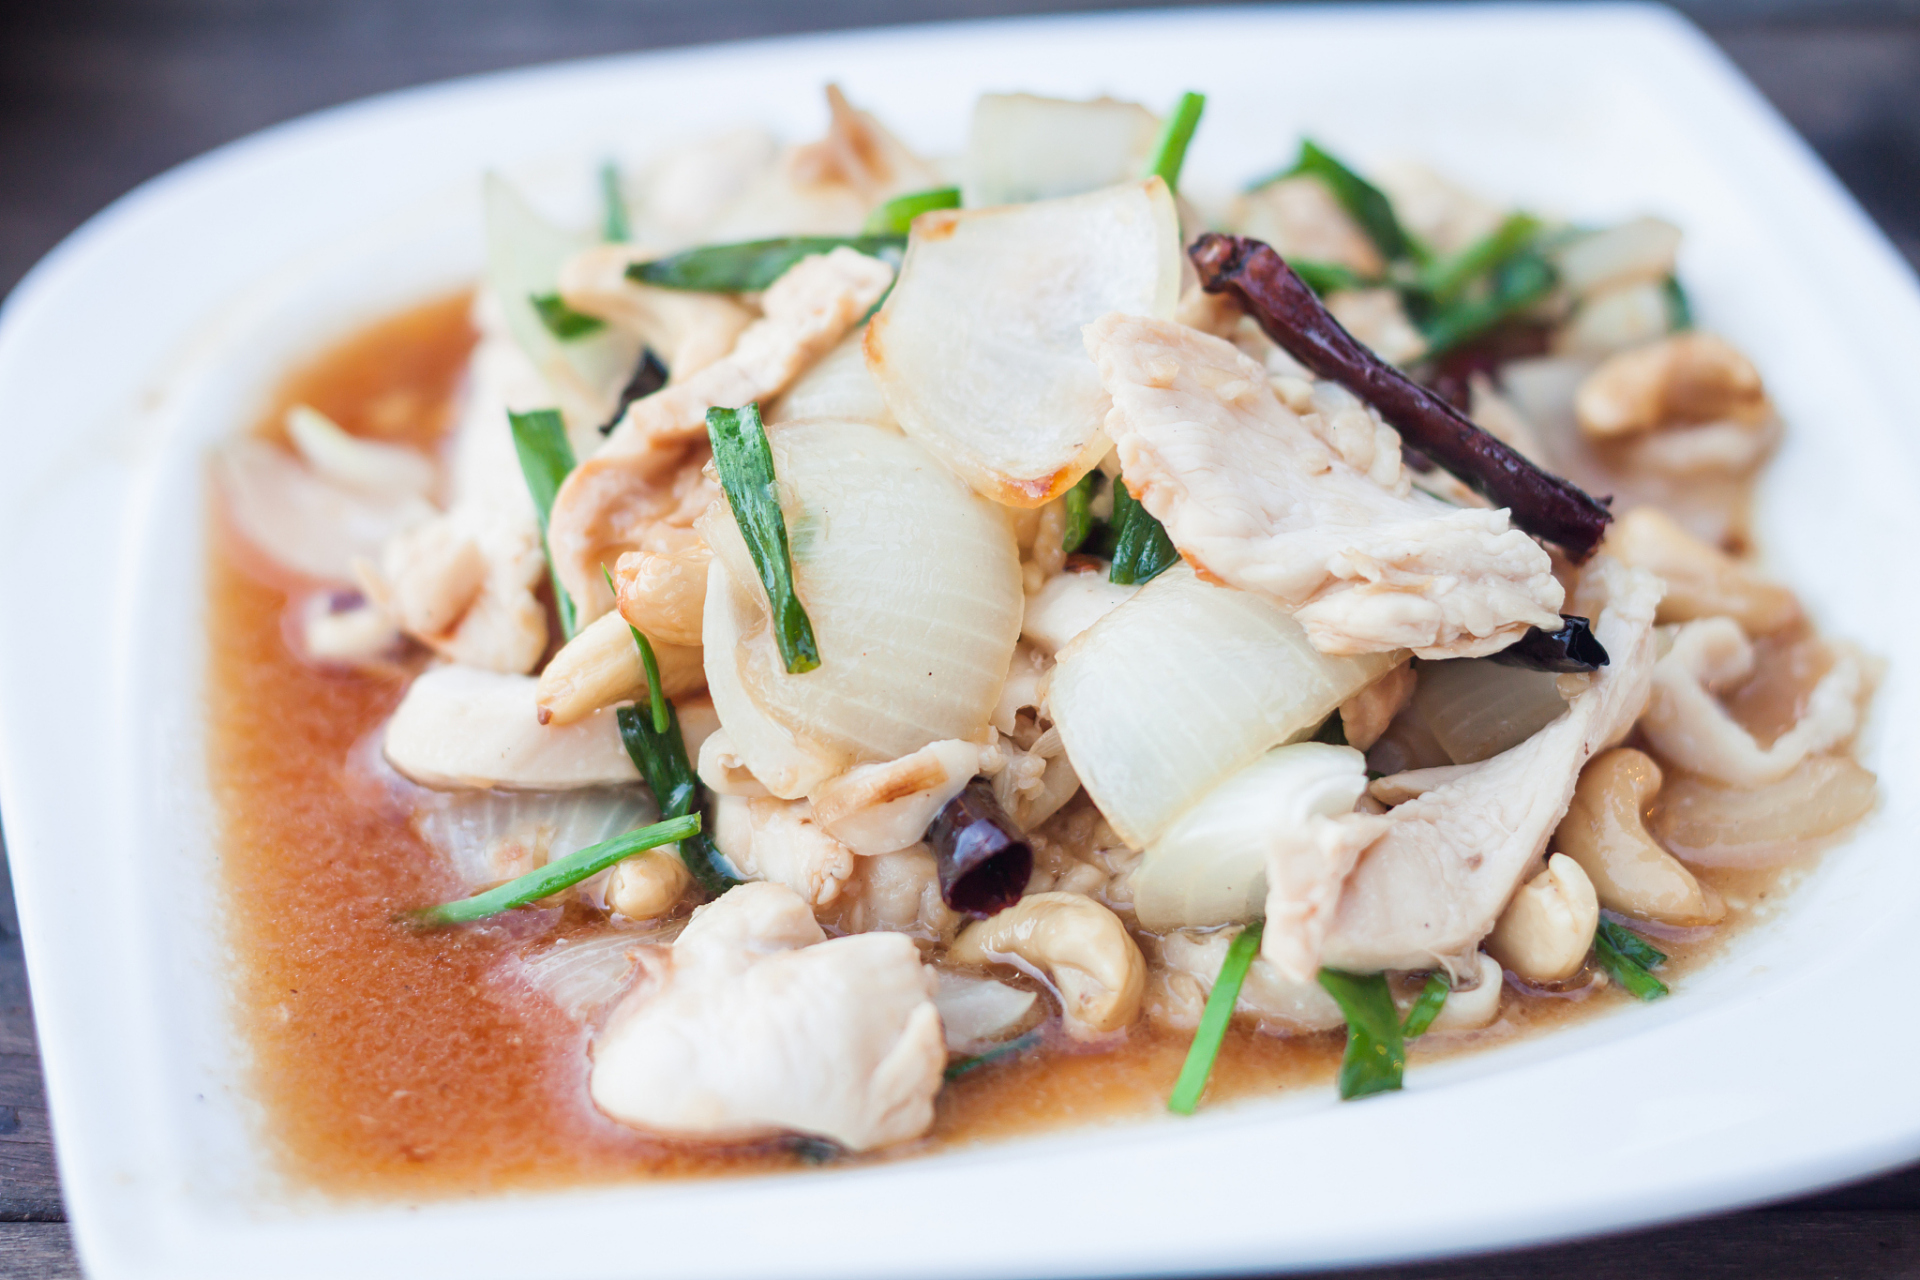 糟溜鱼片是一道广东传统的家常菜肴,以鱼肉为主料,烹制时加入糟卤调味